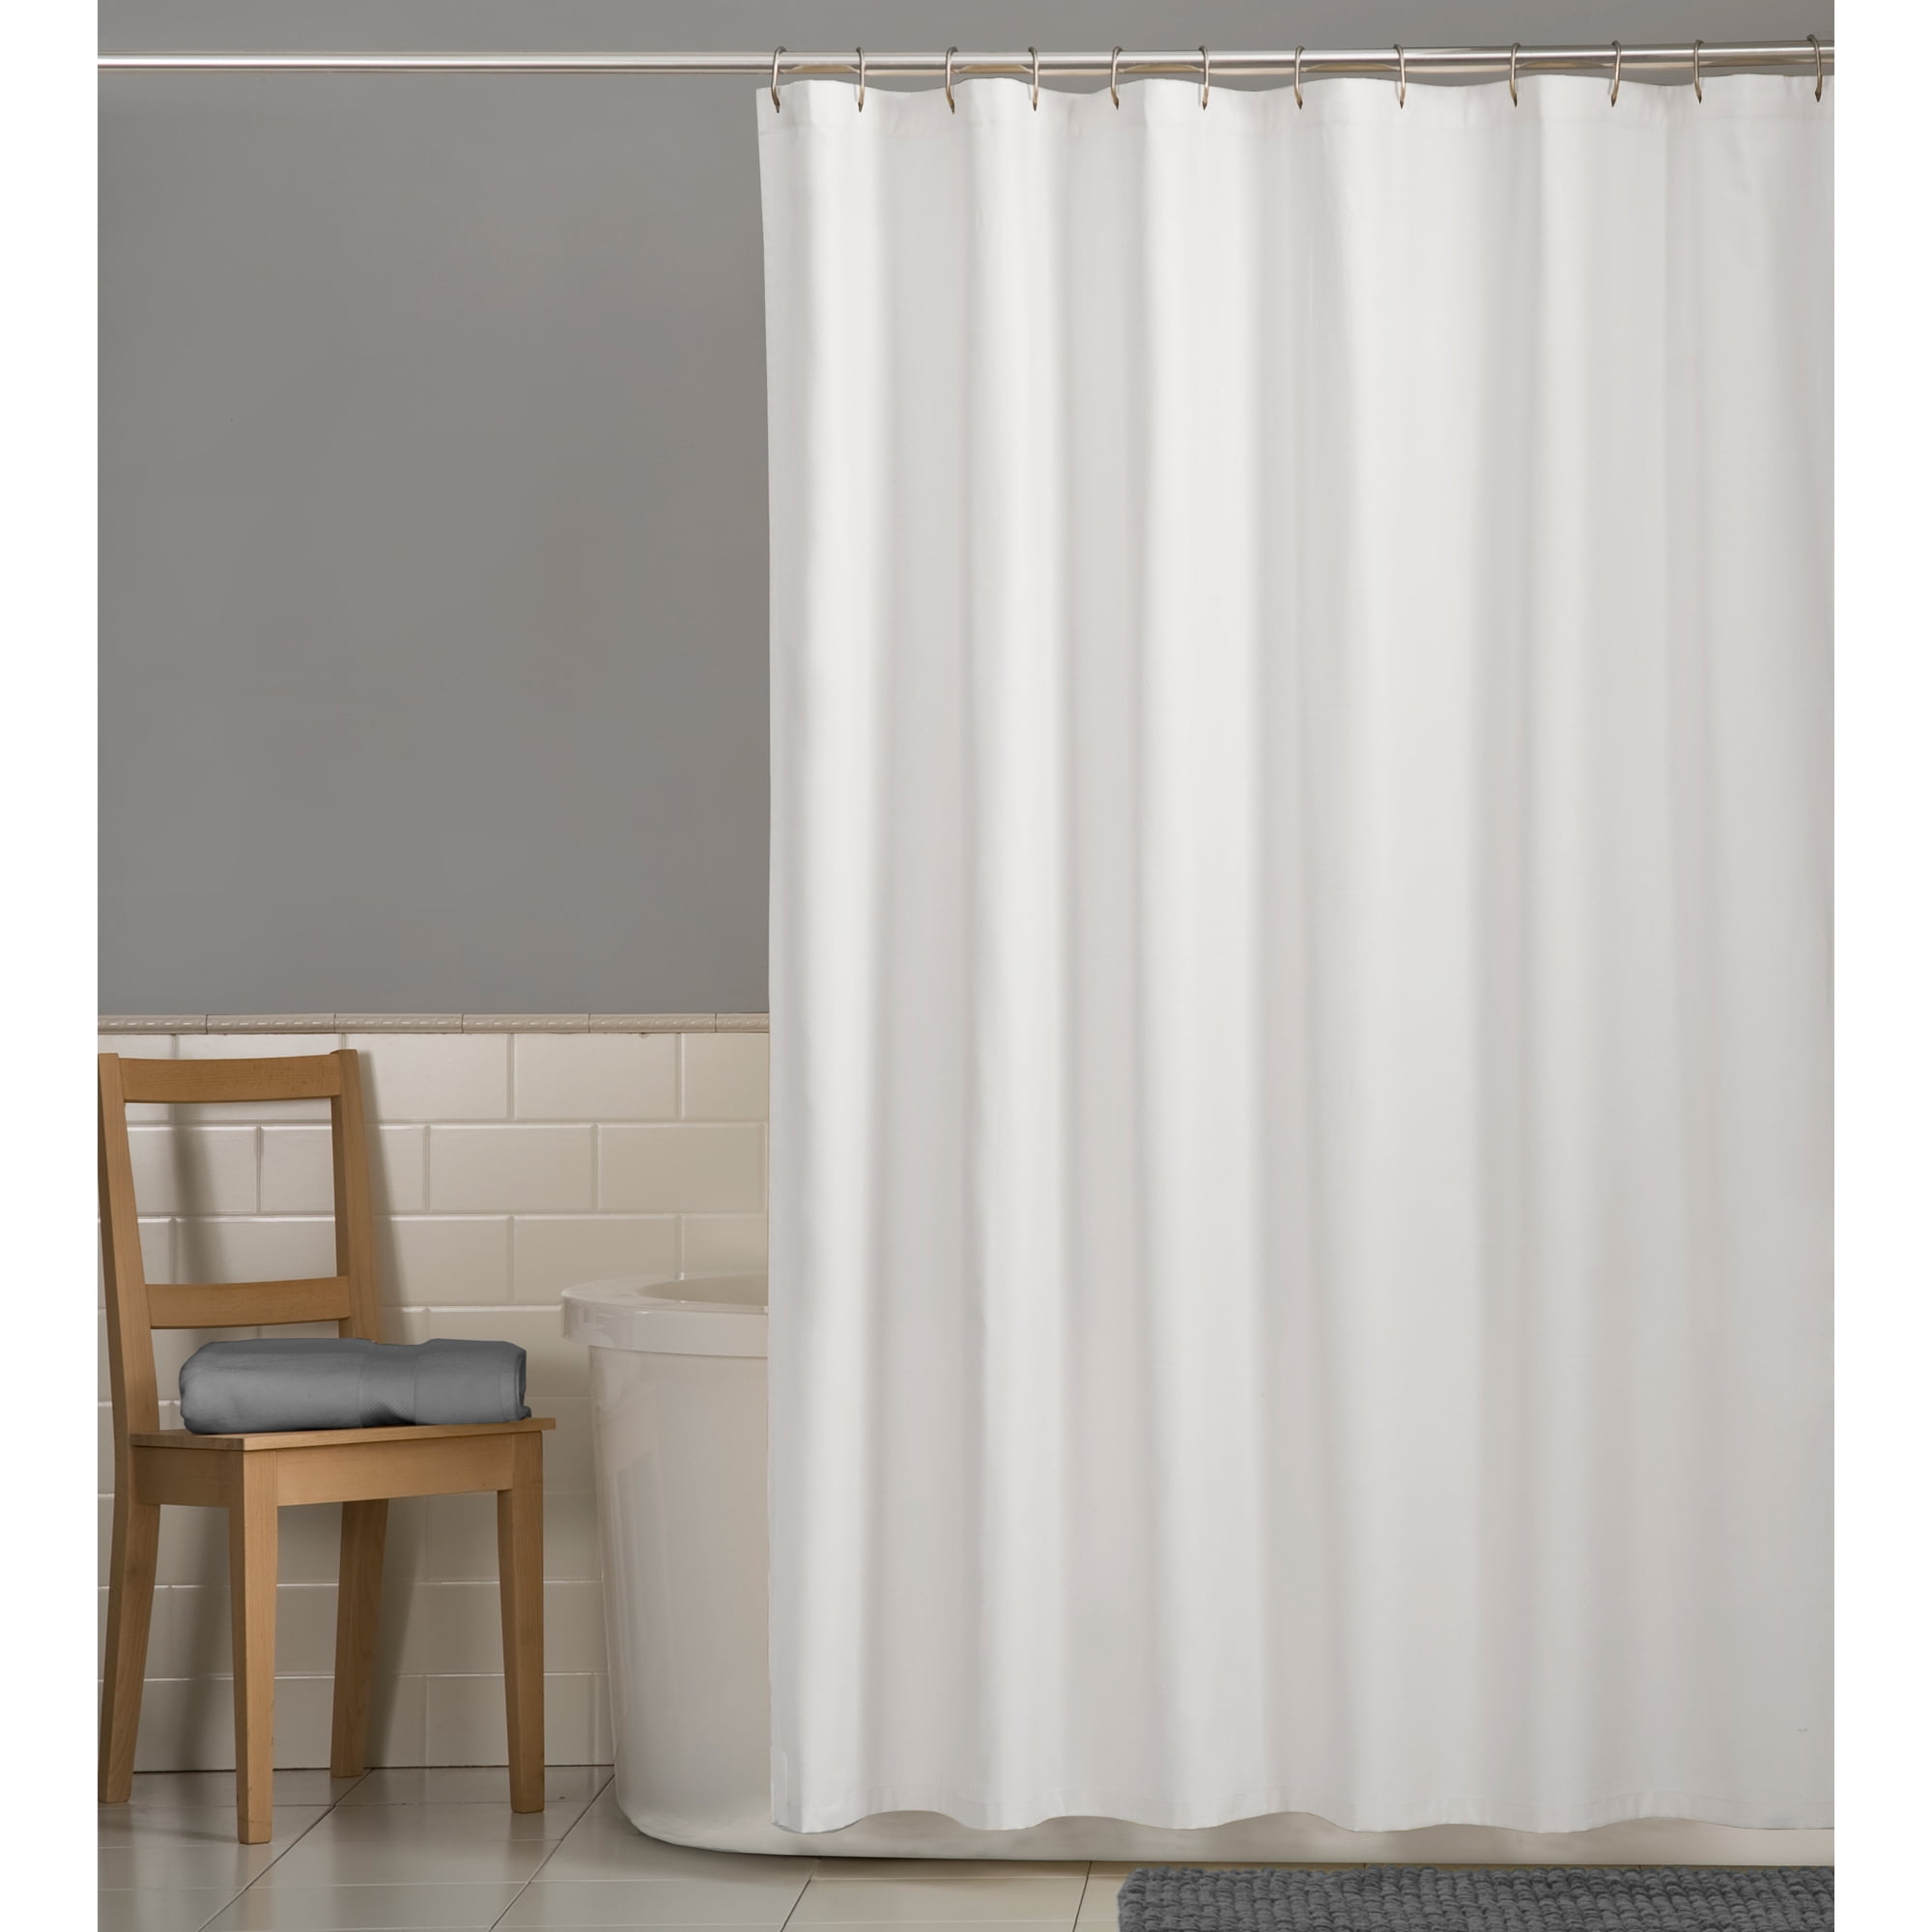 Purple Star Waterproof Bathroom Polyester Shower Curtain Liner Water Resistant